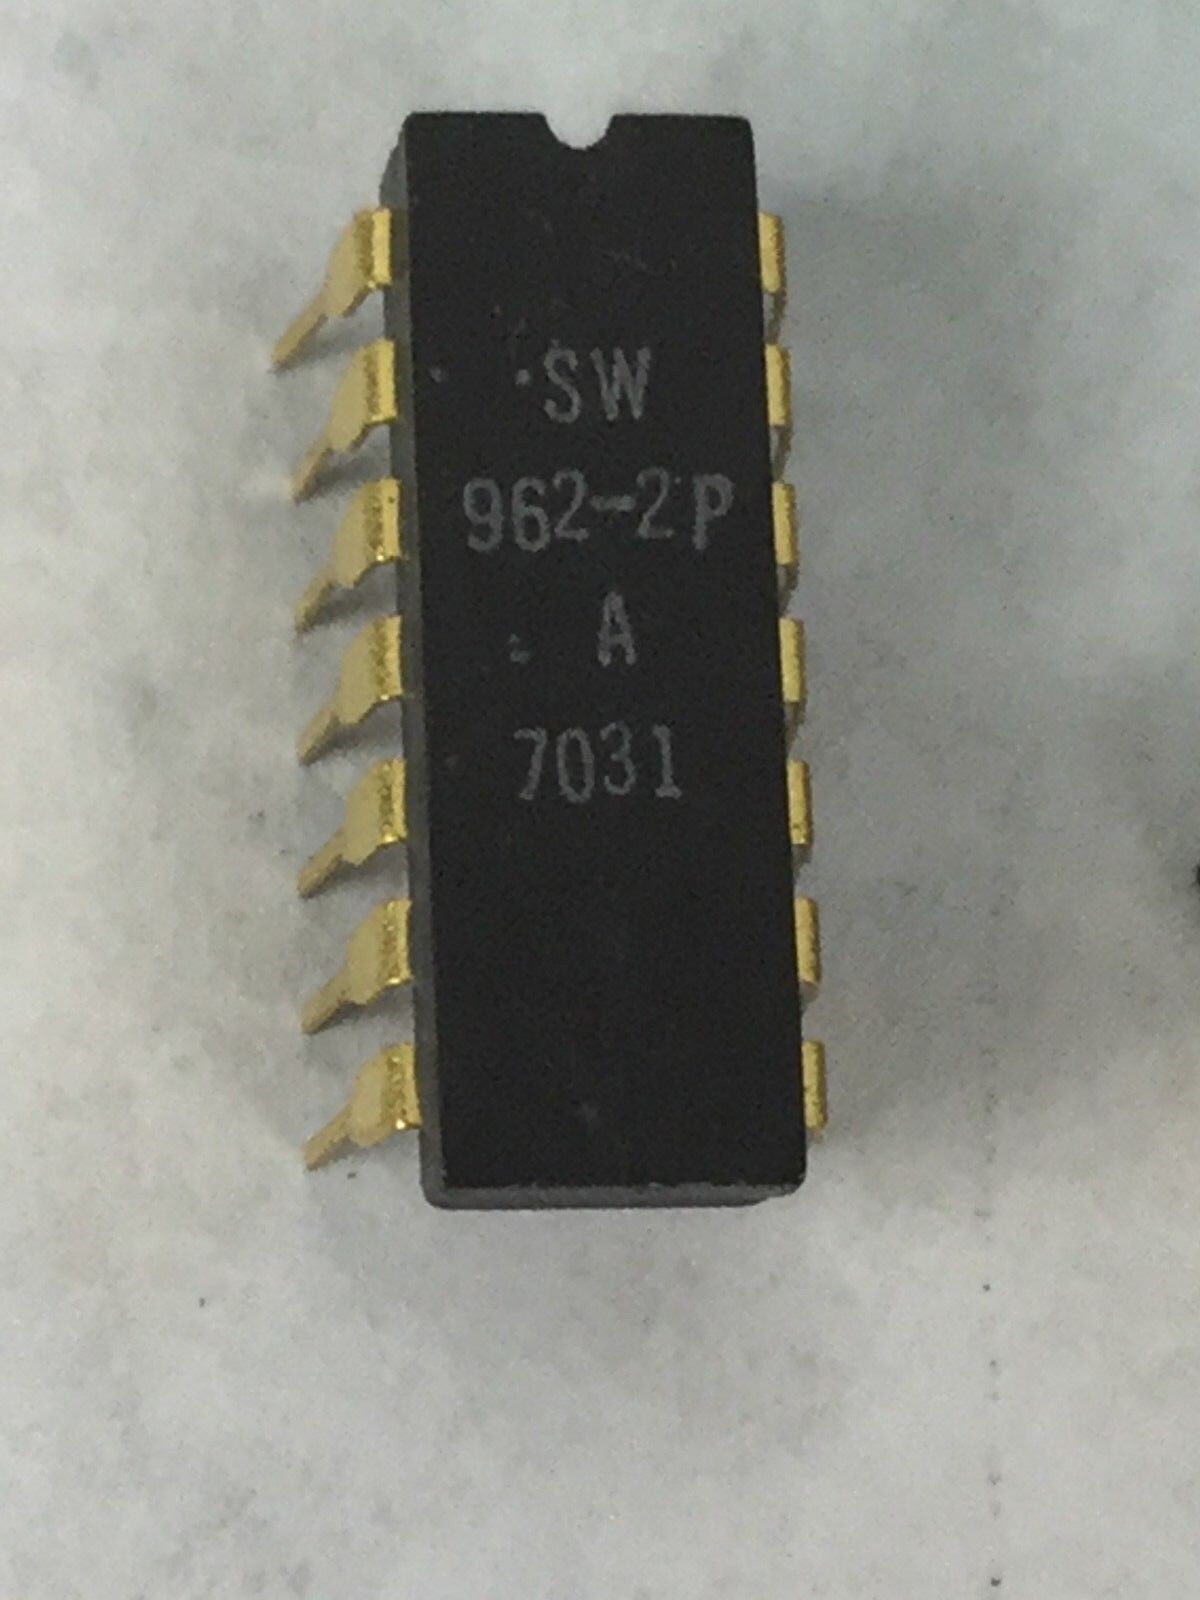 SW 962-2P STEWART WARNER  14 Pin Gold Dip  Lot of 30